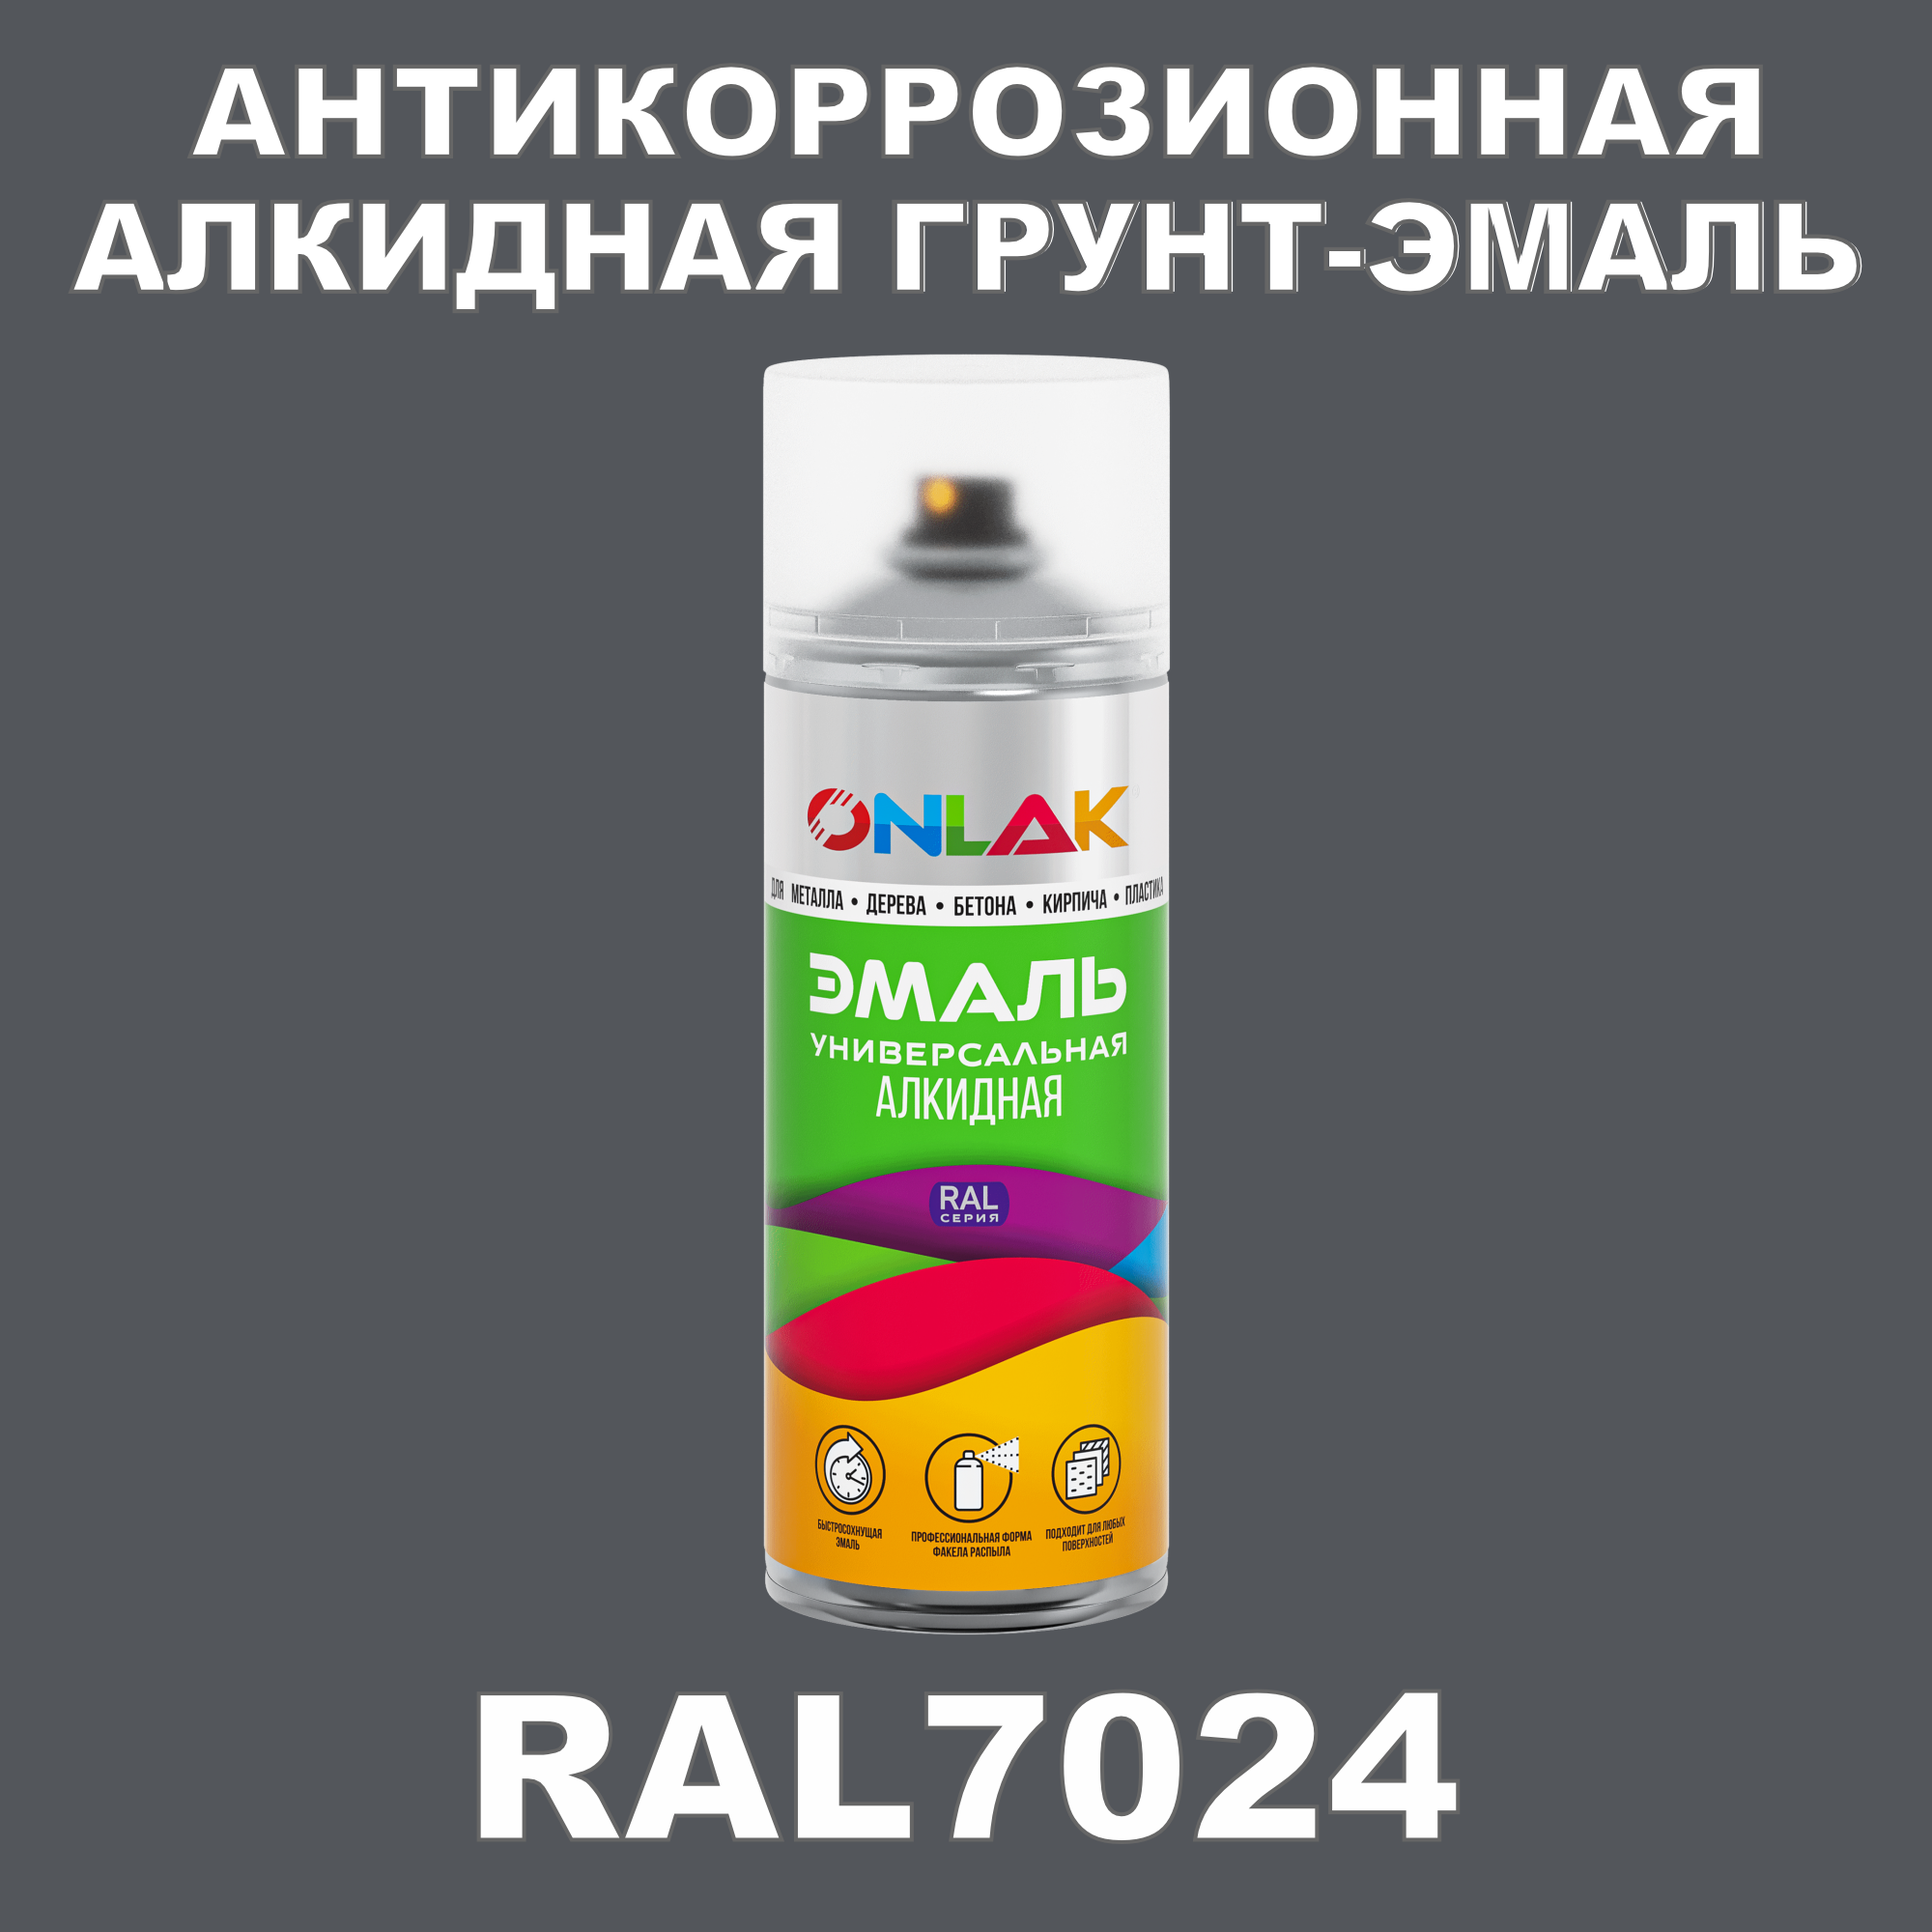 Антикоррозионная грунт-эмаль ONLAK RAL7024 полуматовая для металла и защиты от ржавчины